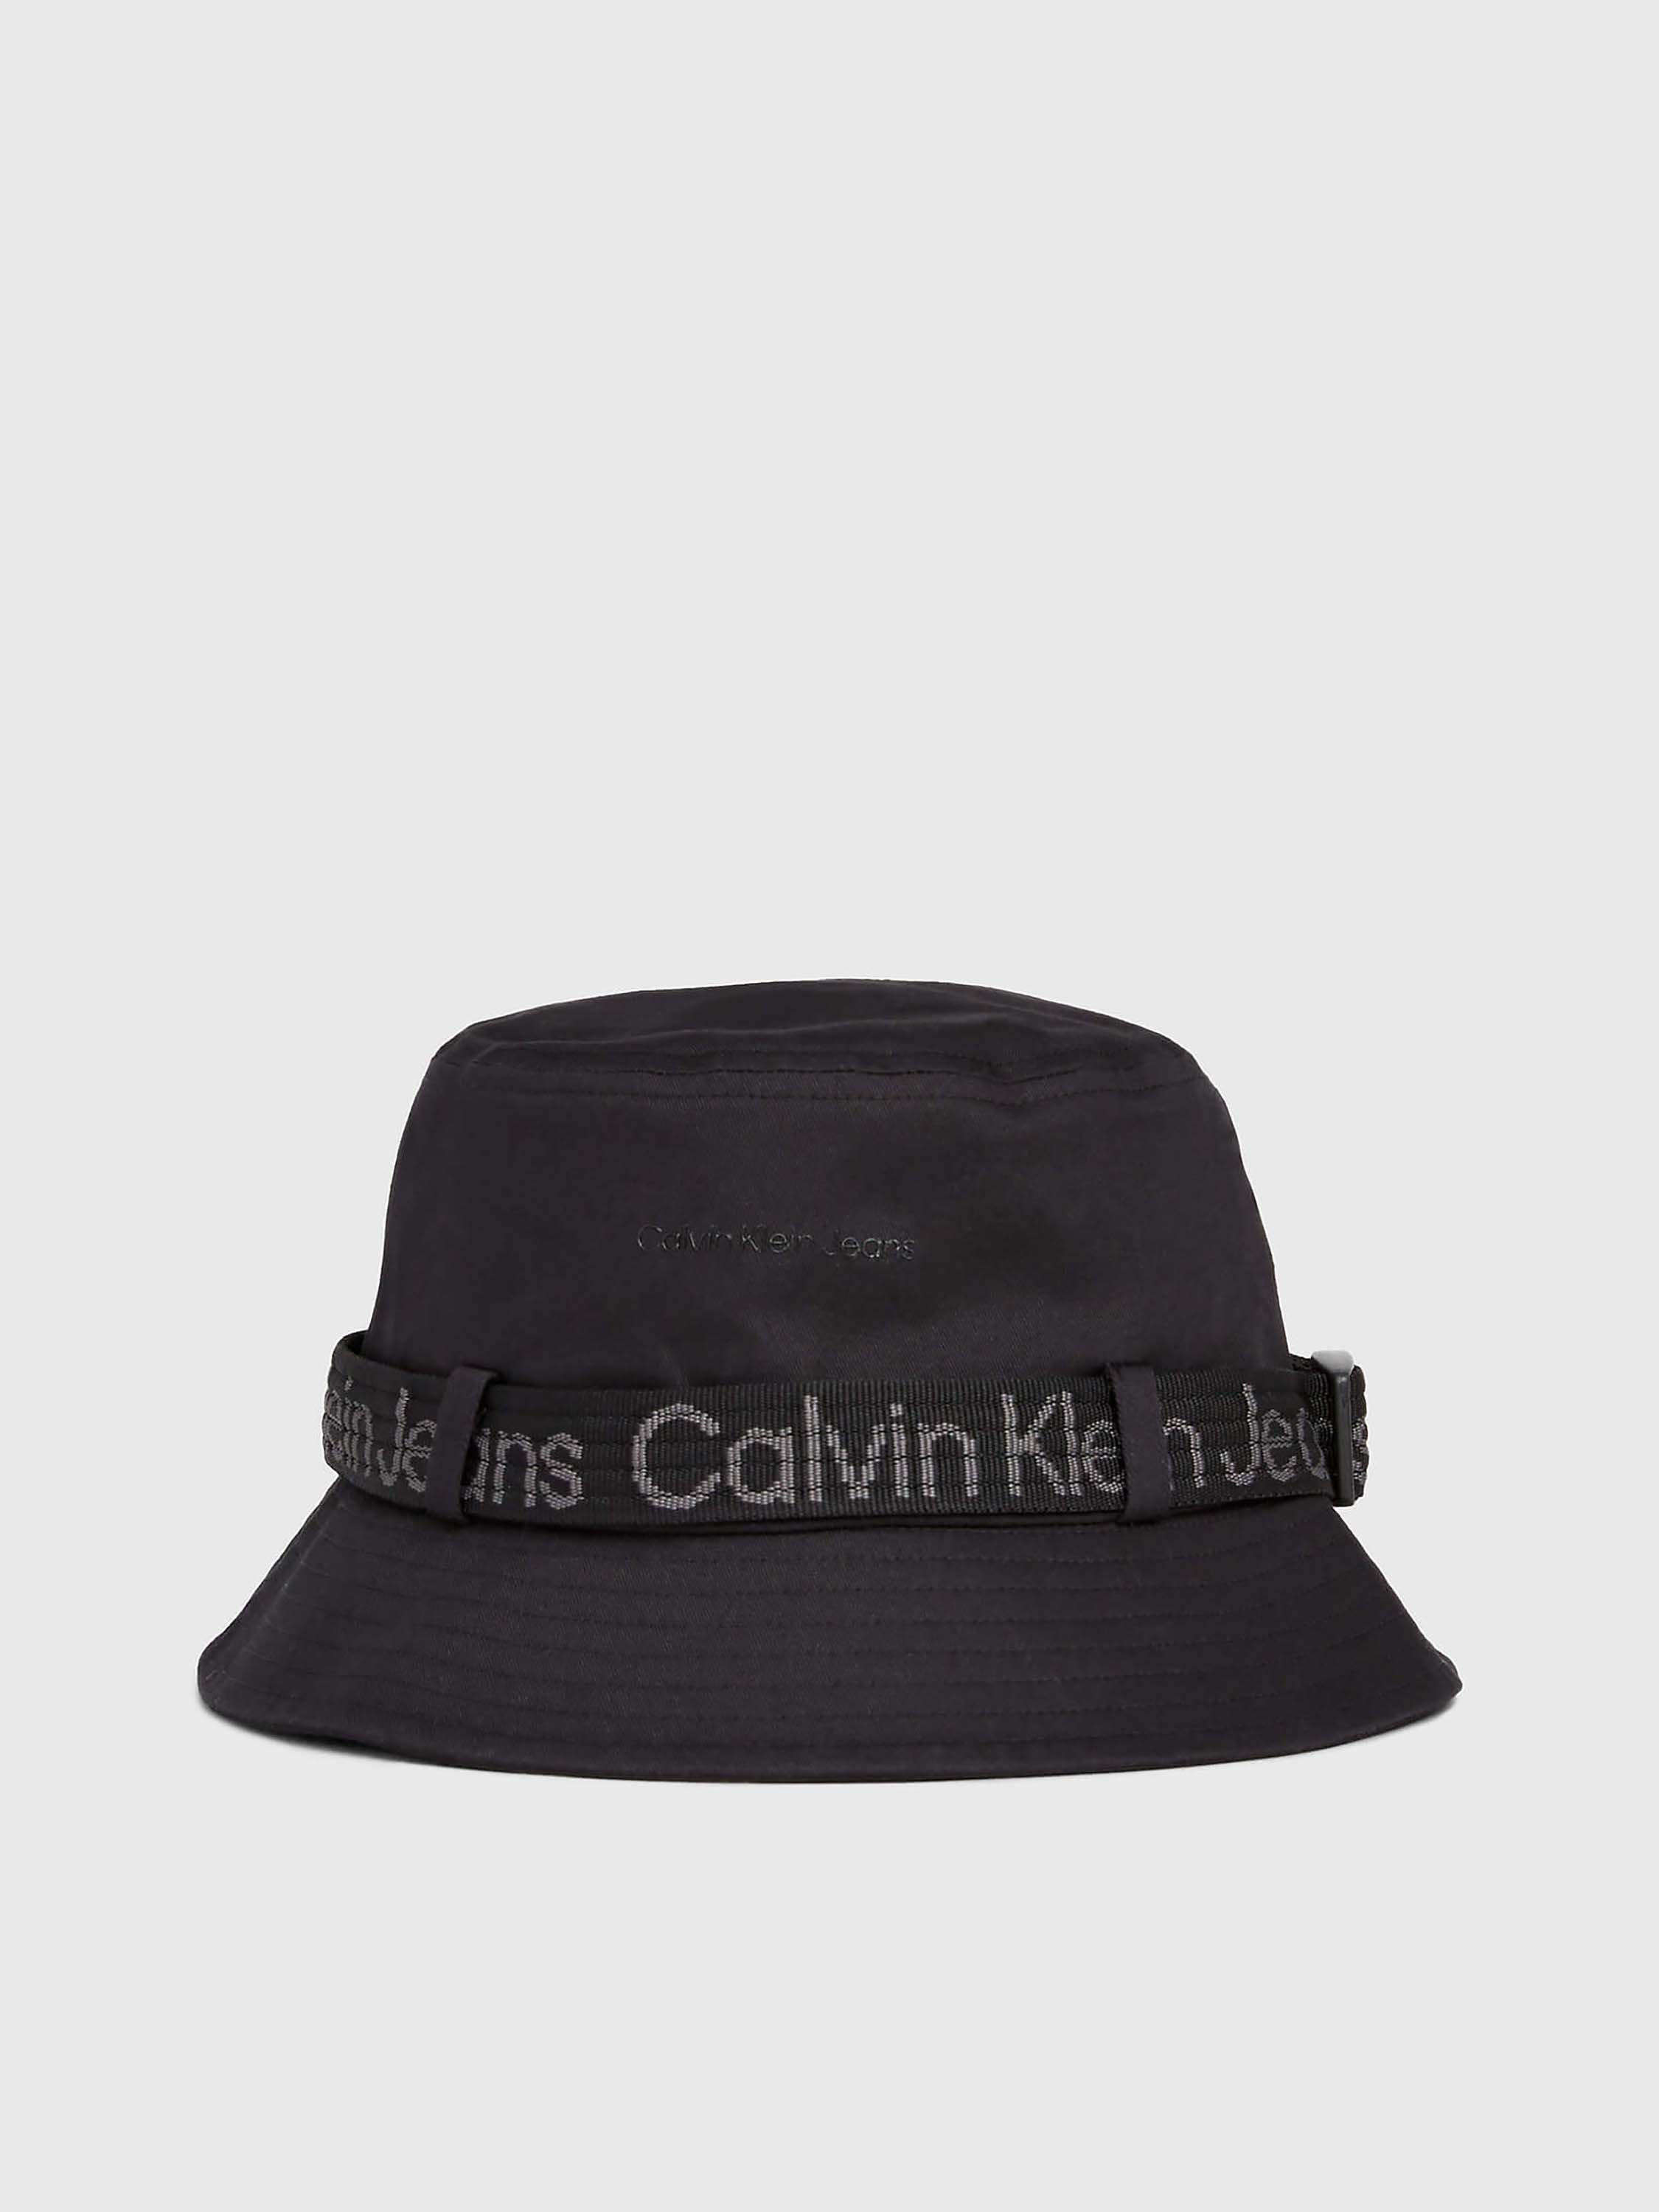 Bucket Calvin Klein Carousel Negro - Talla: Única